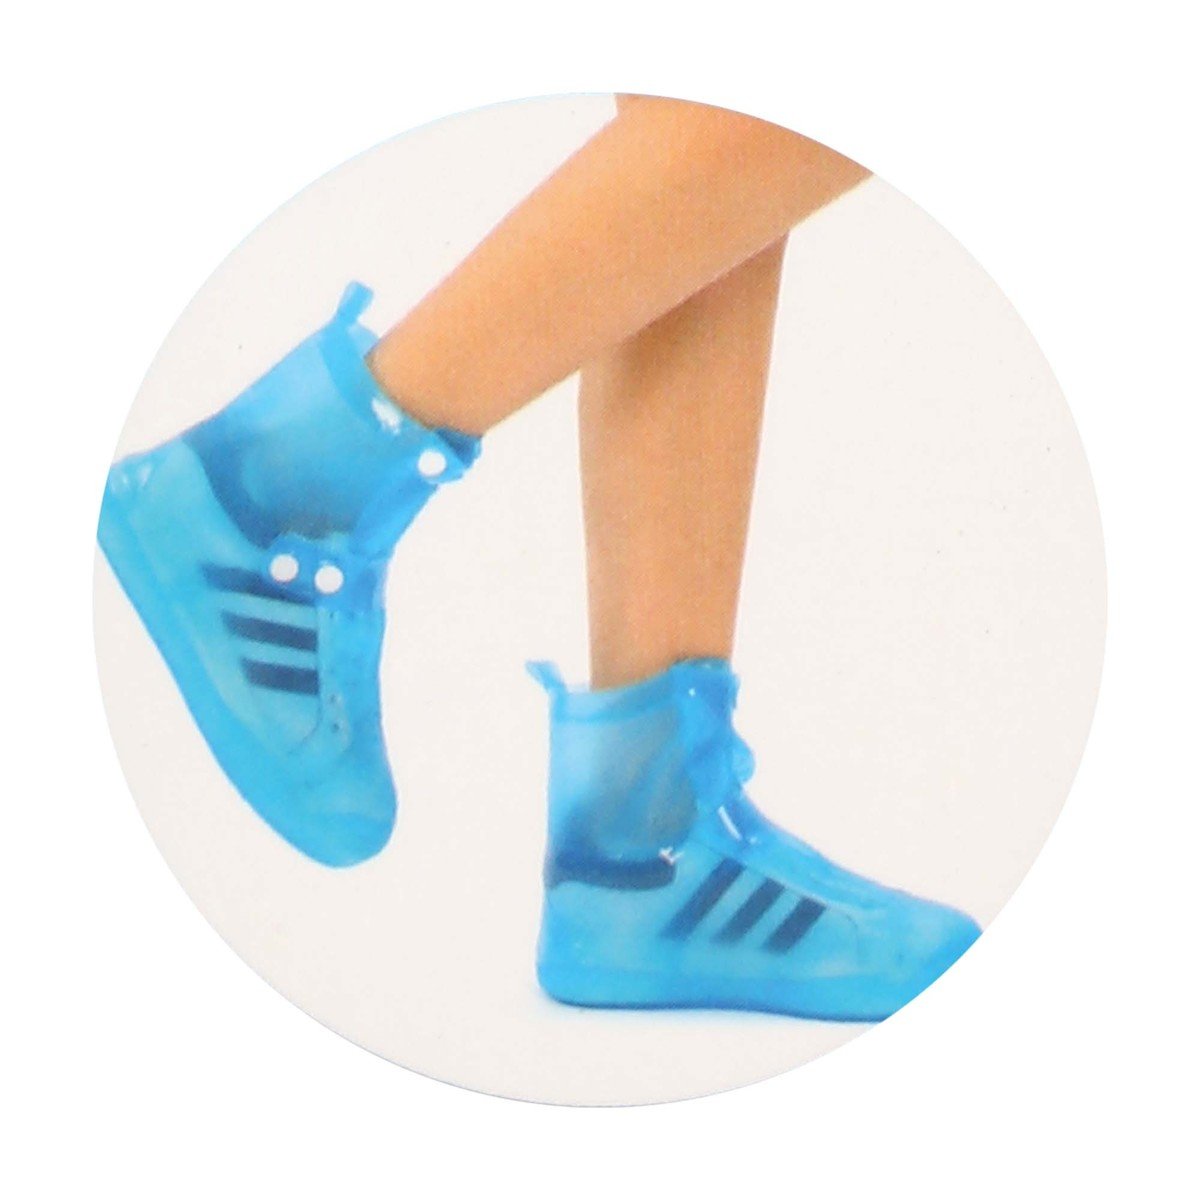 باورمان أحذية المطر PVC بمقاس XL بألوان متنوعة